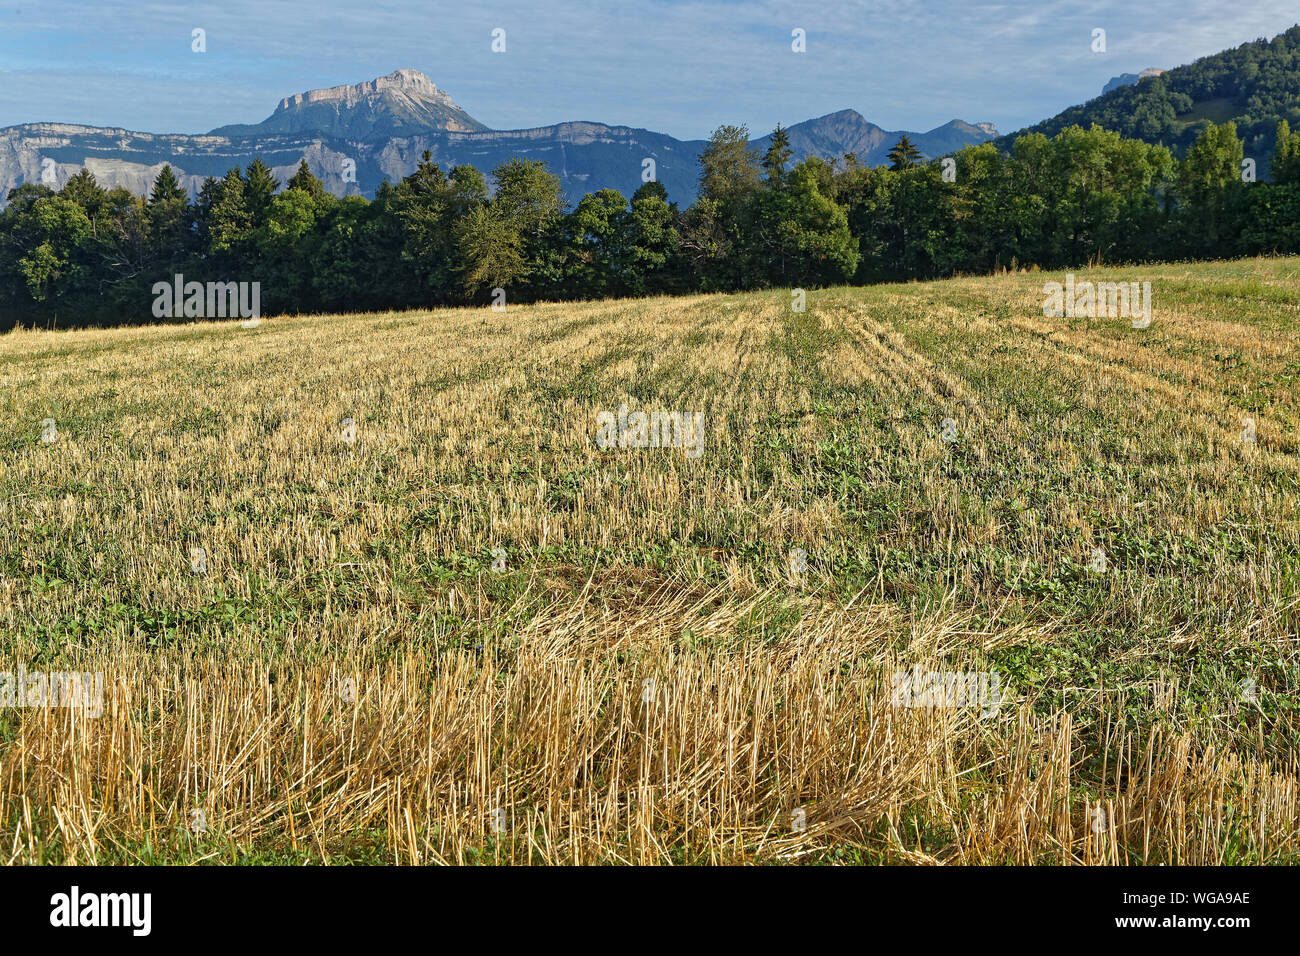 Les champs récoltés avec Chartreuse de montagnes en arrière-plan sur une journée ensoleillée Banque D'Images